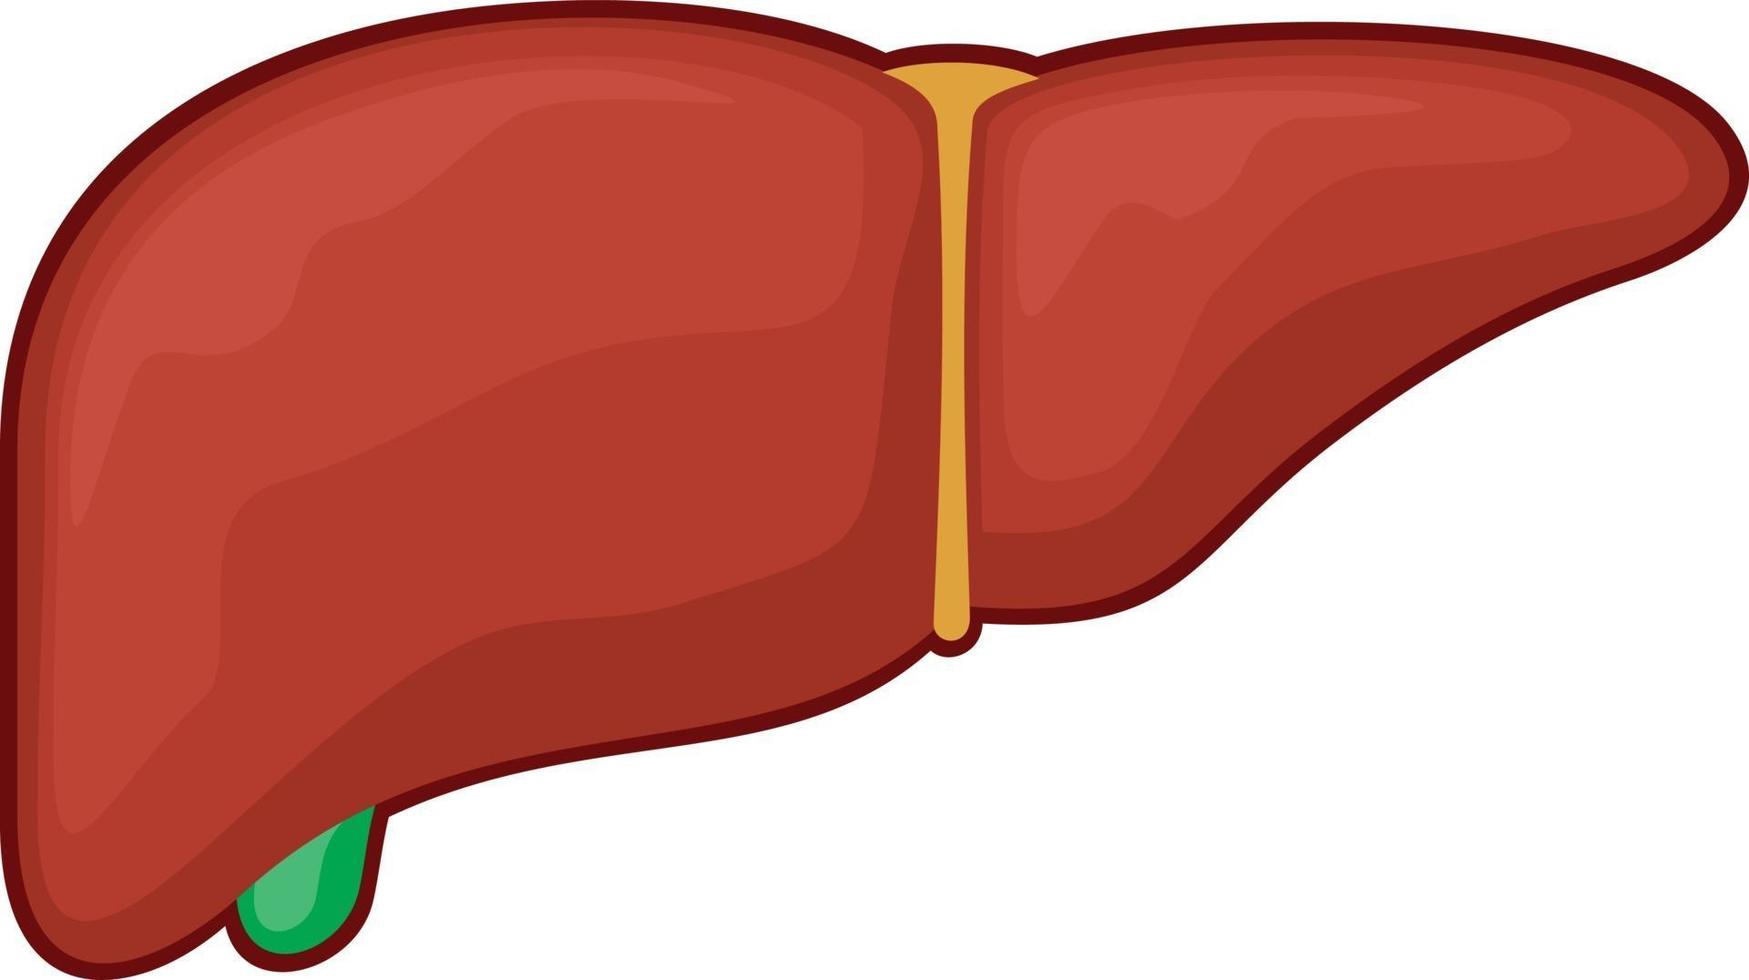 órgano del hígado humano vector